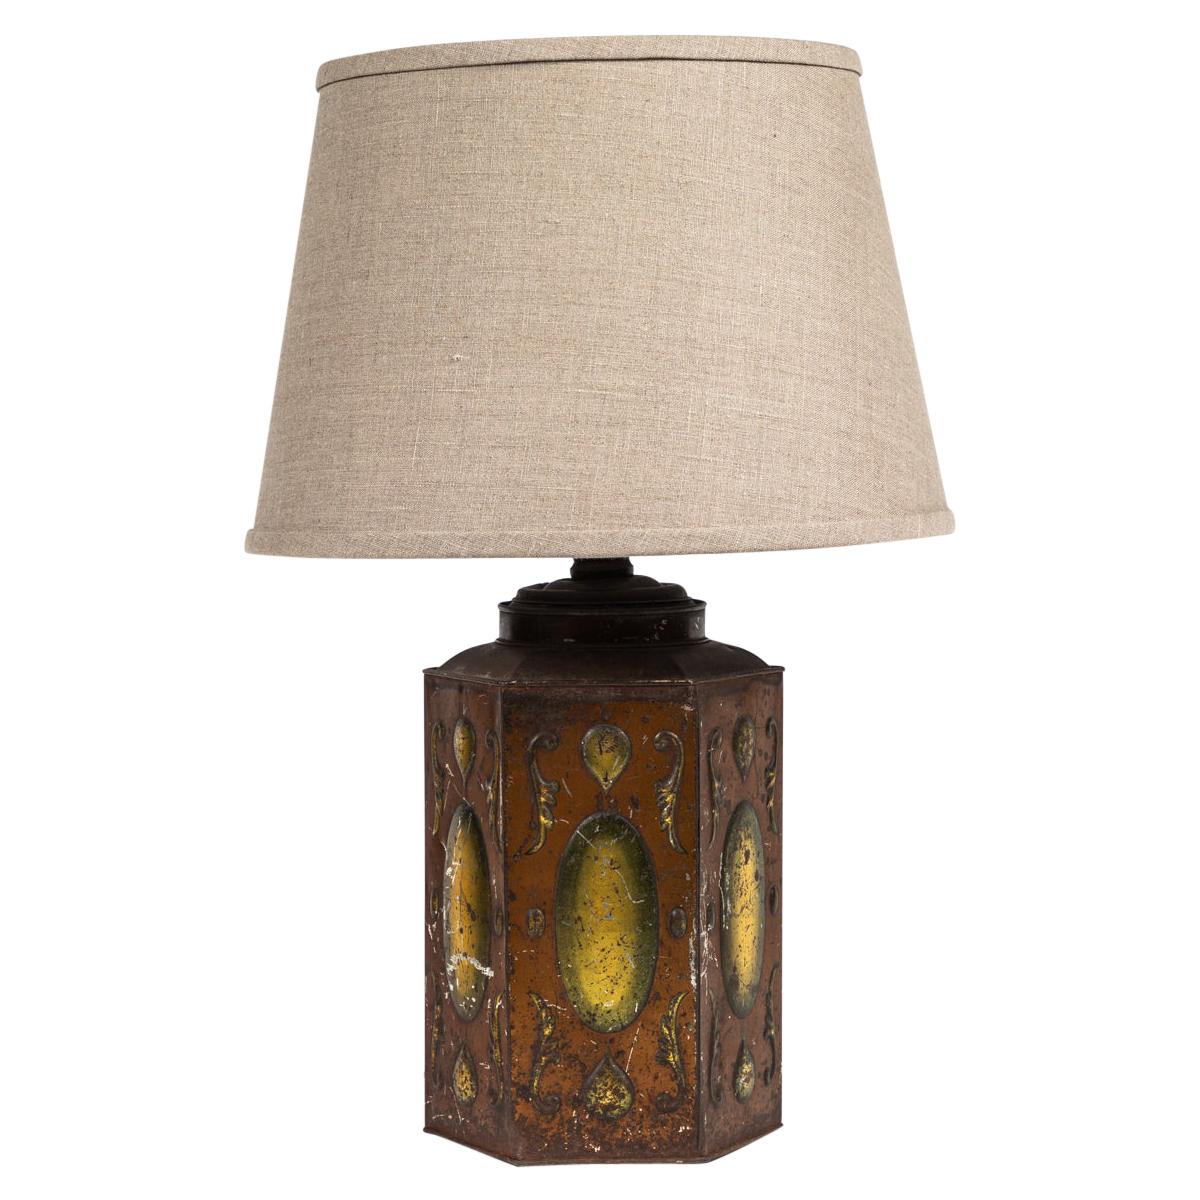 Zinnlampe mit Zinndekor aus dem späten 19. Jahrhundert und individuellem Lampenschirm 